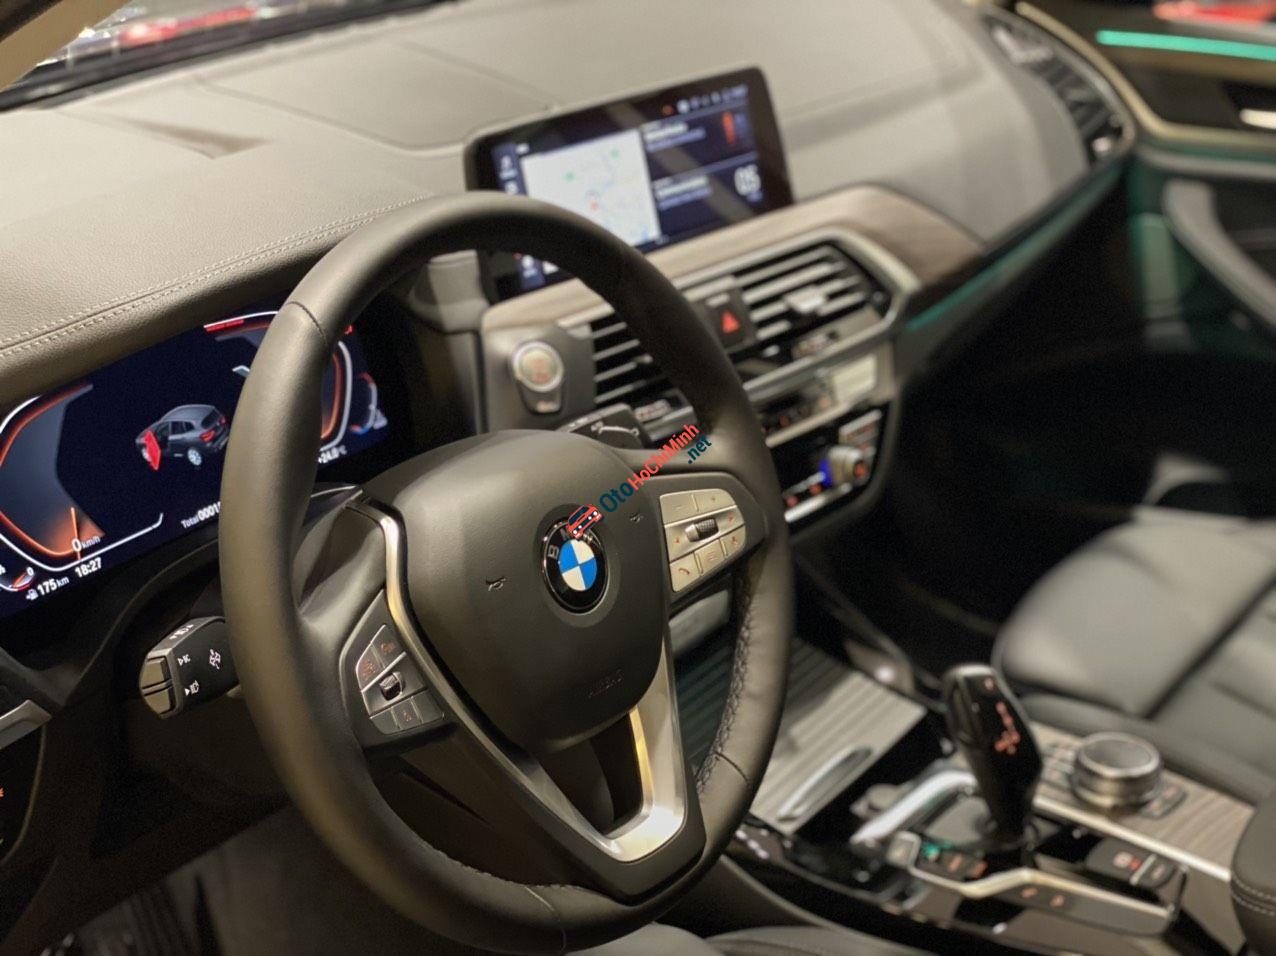 Bán xe BMW X3 xDrive20i năm sản xuất 2021 - thể hiện vẻ ngoài thể thao và năng động